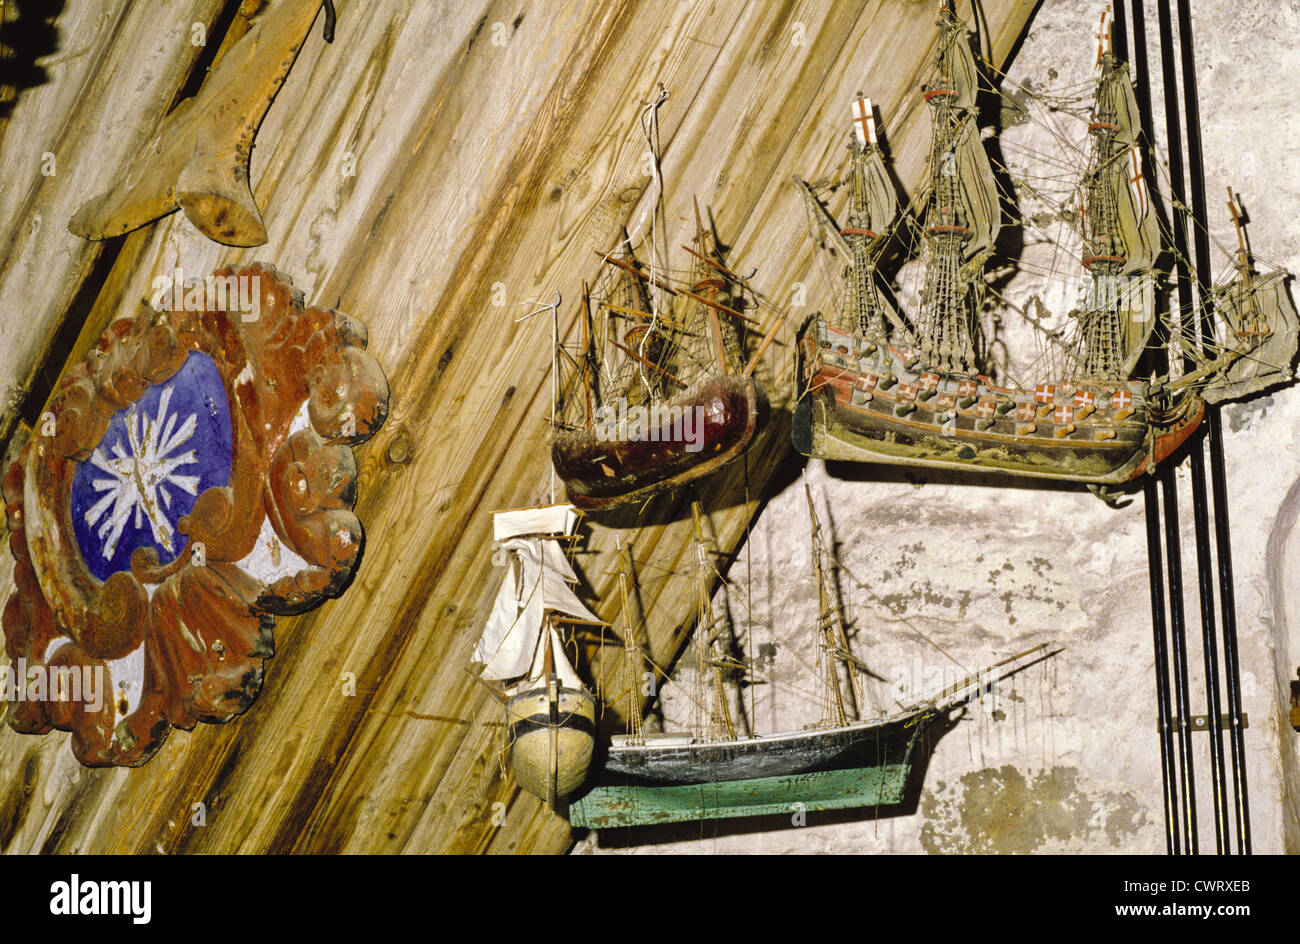 Maquettes bateaux suspendus dans le 18e siècle, ancienne église de Uusikaupunki, Finlande Banque D'Images